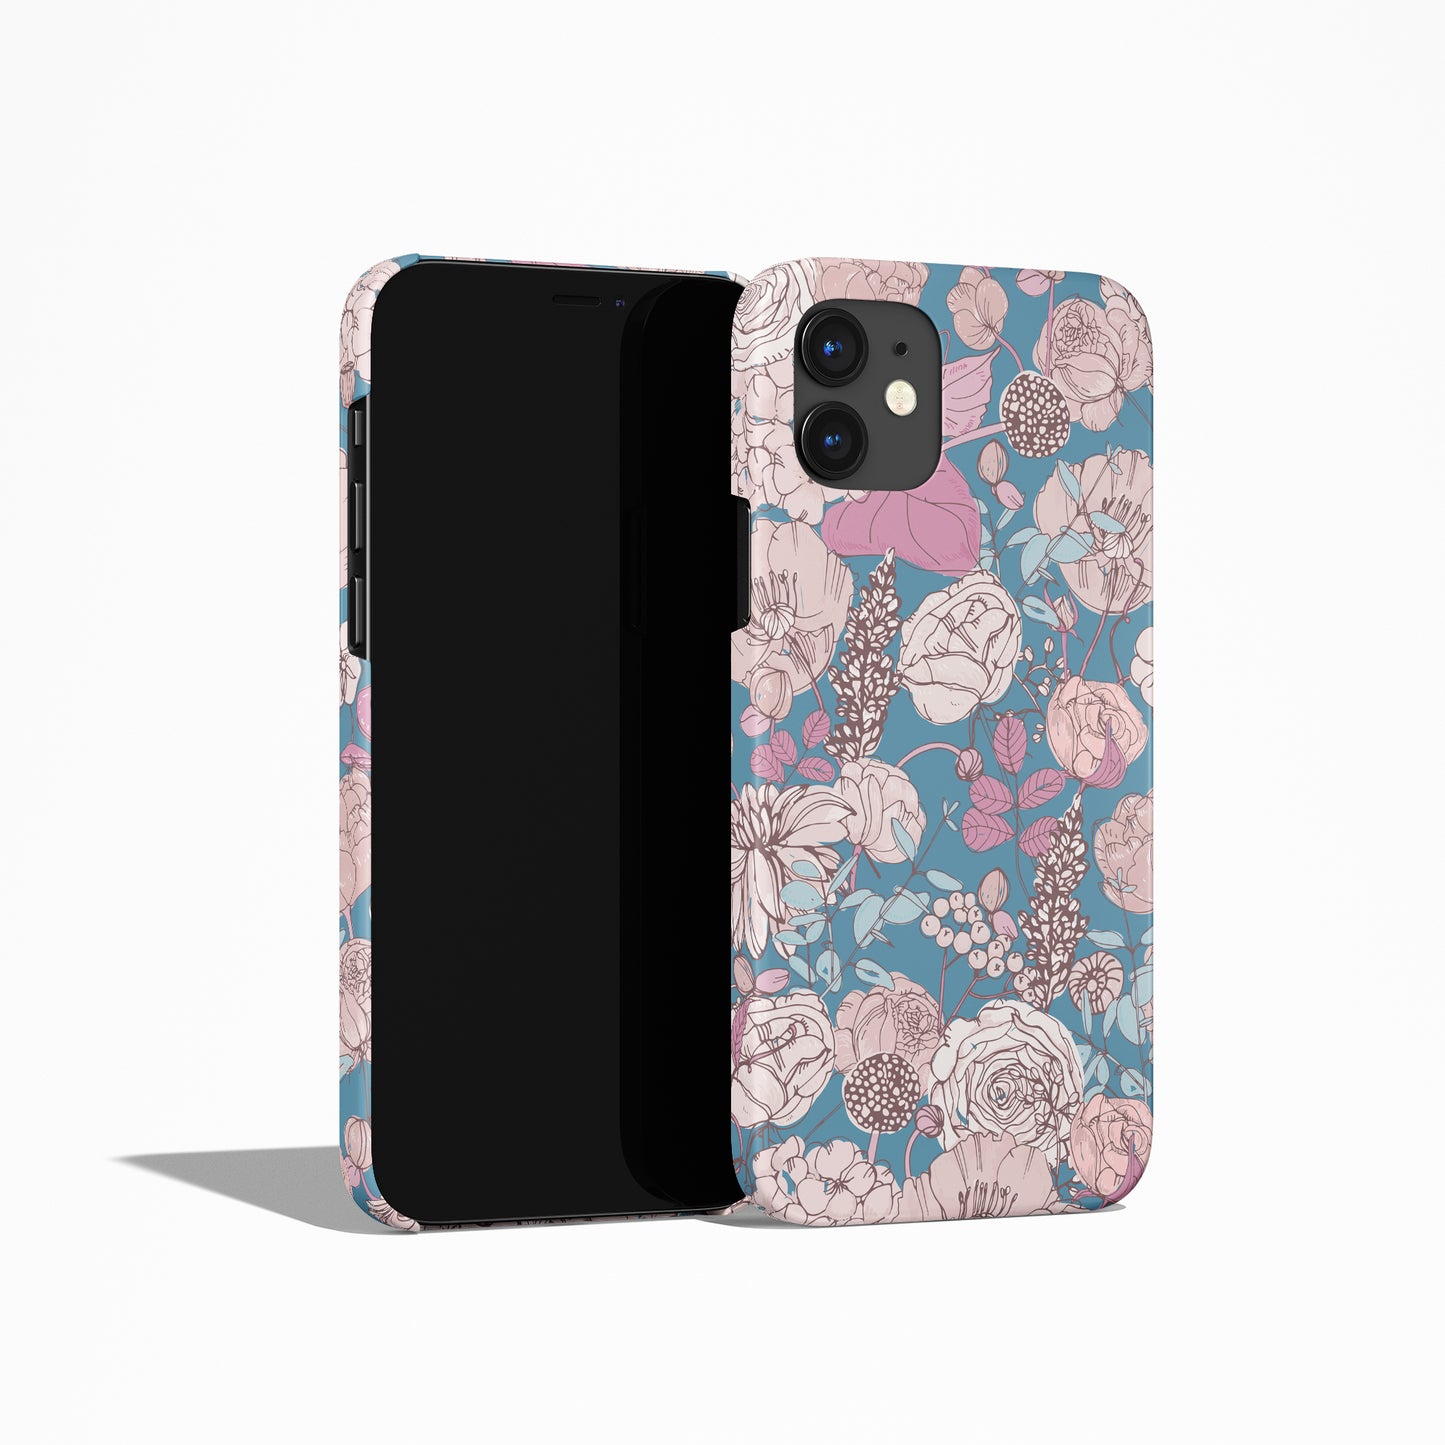 Feminin Pastel Floral iPhone Case